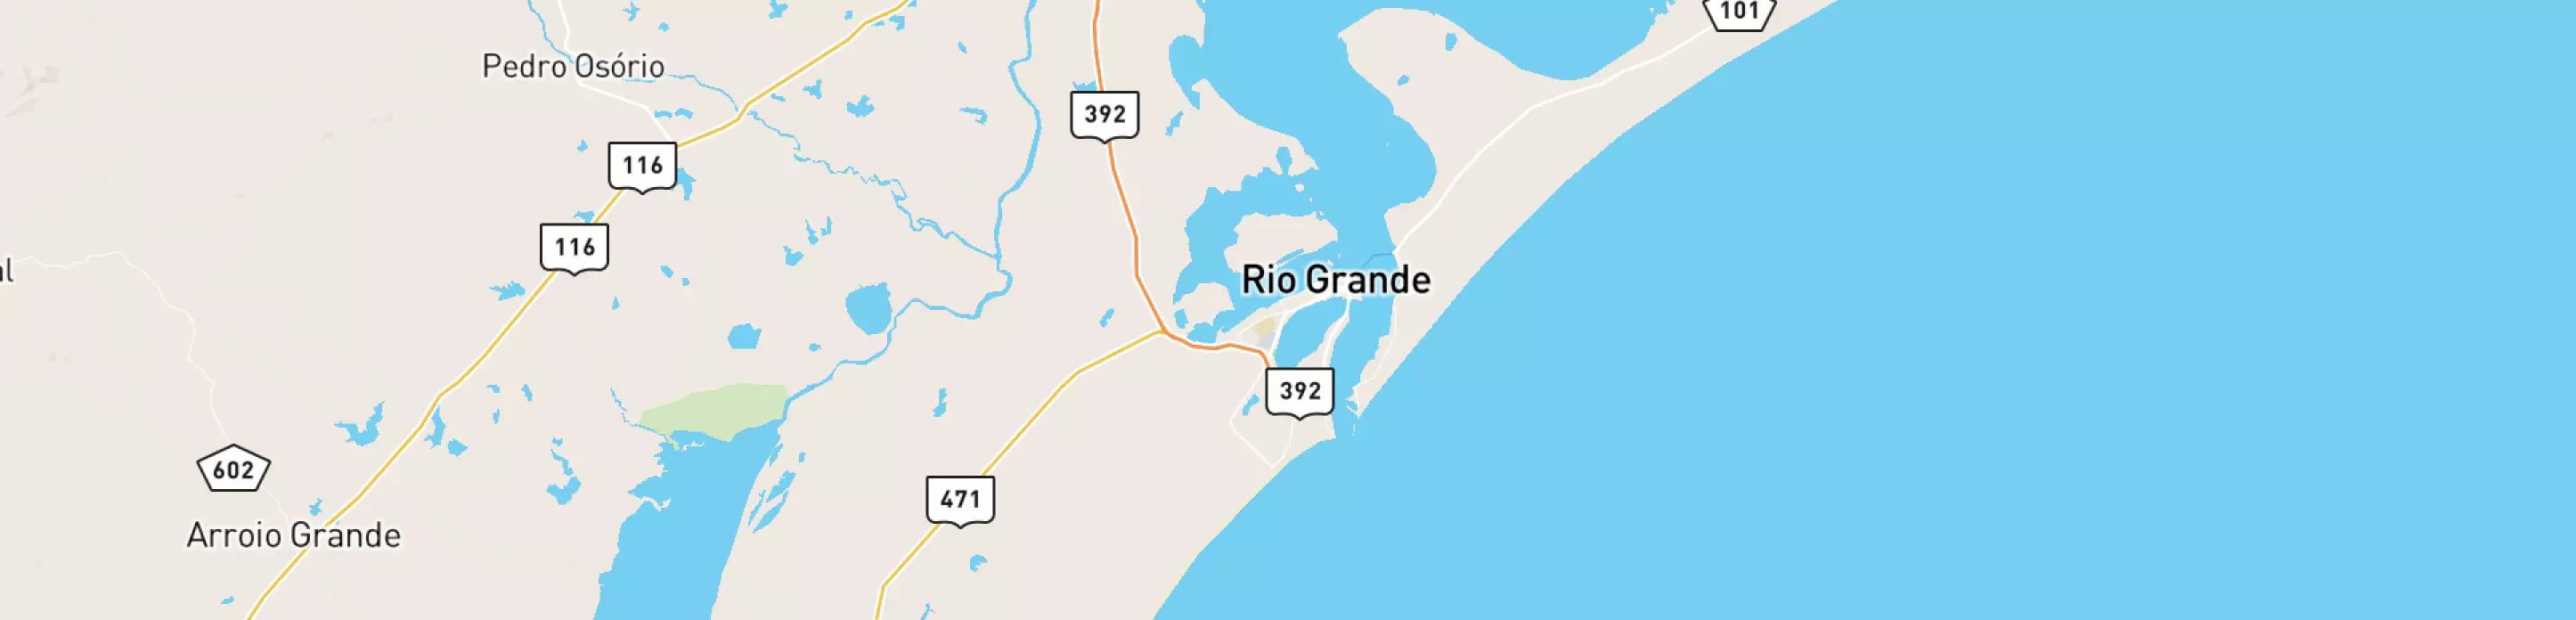 Mapa mostrando localização do terminal logístico Rio Grande, da Petrobras